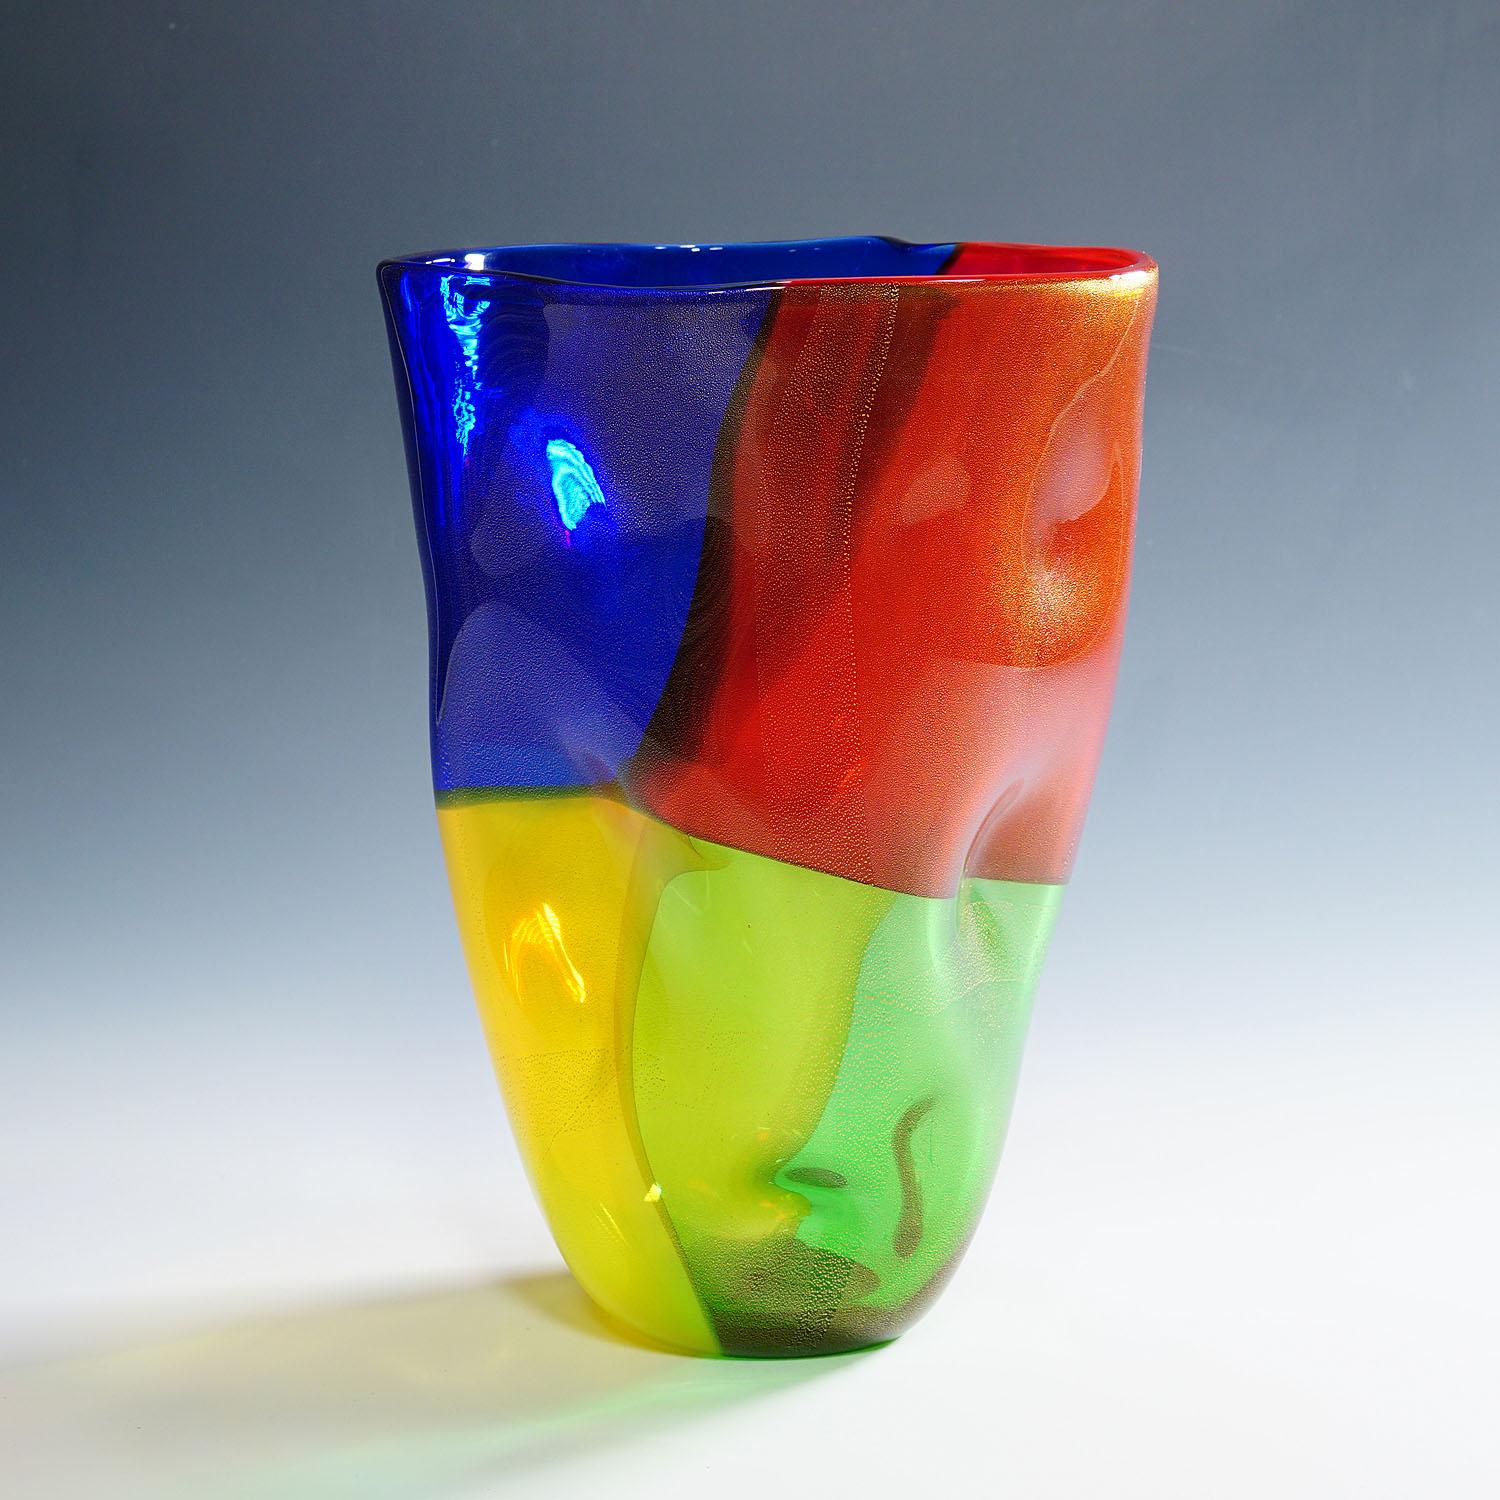 Vintage-Kunstglasvase aus der Serie 4 Quarti von Seguso Viro, Vintage

Eine große Vase aus Kunstglas in Form einer Papiertüte (cartoccio). Die Vase ist Teil der Serie 